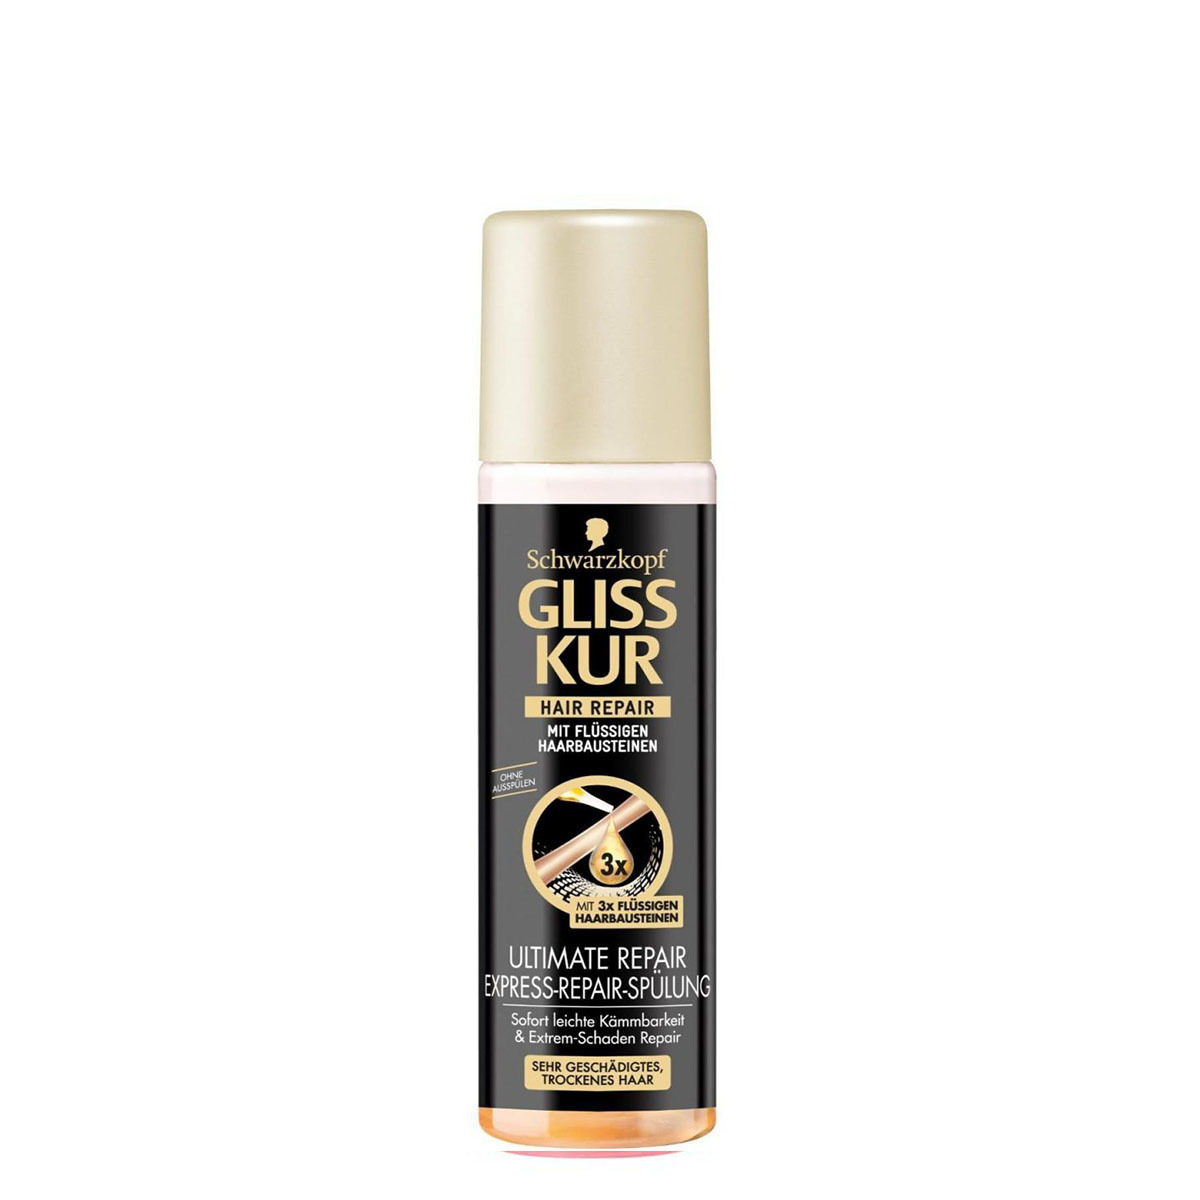 Несмываемый кондиционер для волос. Gliss Kur Ultimate Repair. Gliss Kur Express Conditioner 200ml. Gliss Ultimate Repair кондиционер для волос. Шварцкопф кондиционер спрей несмываемый.